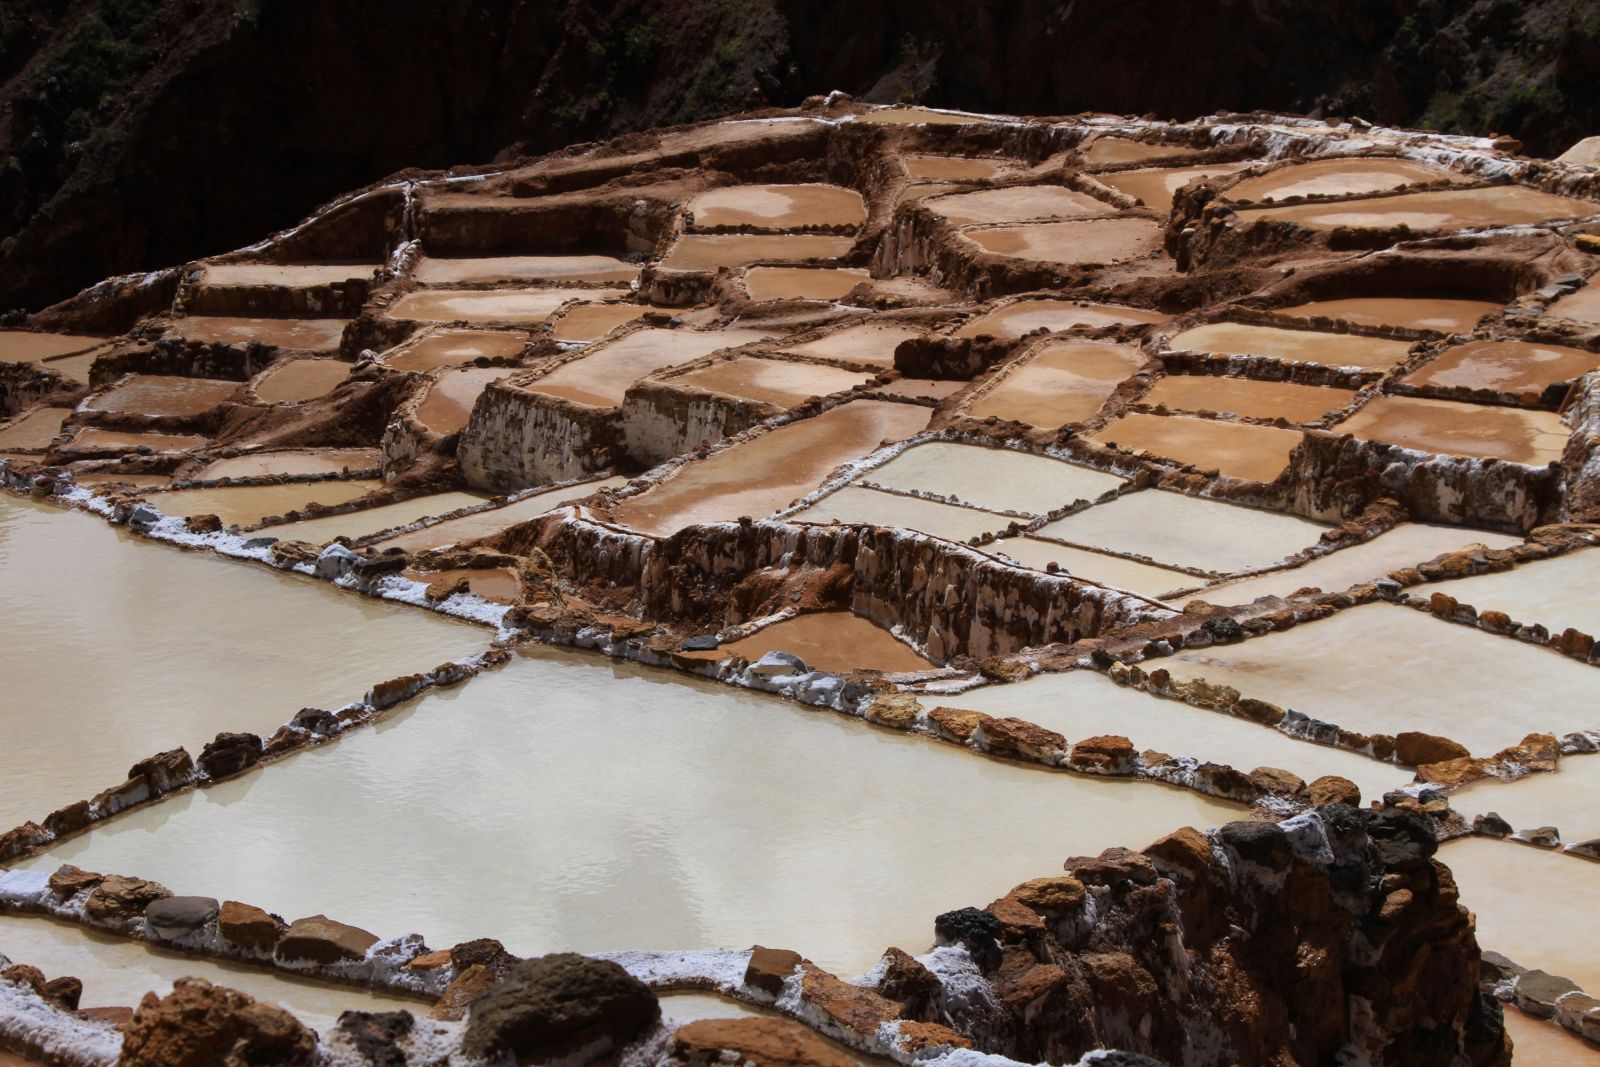 Salinas de Maras – im heiligen Tal baut die Gemeinde von Maras terrassenförmig Salz aus einer heißen Quelle ab